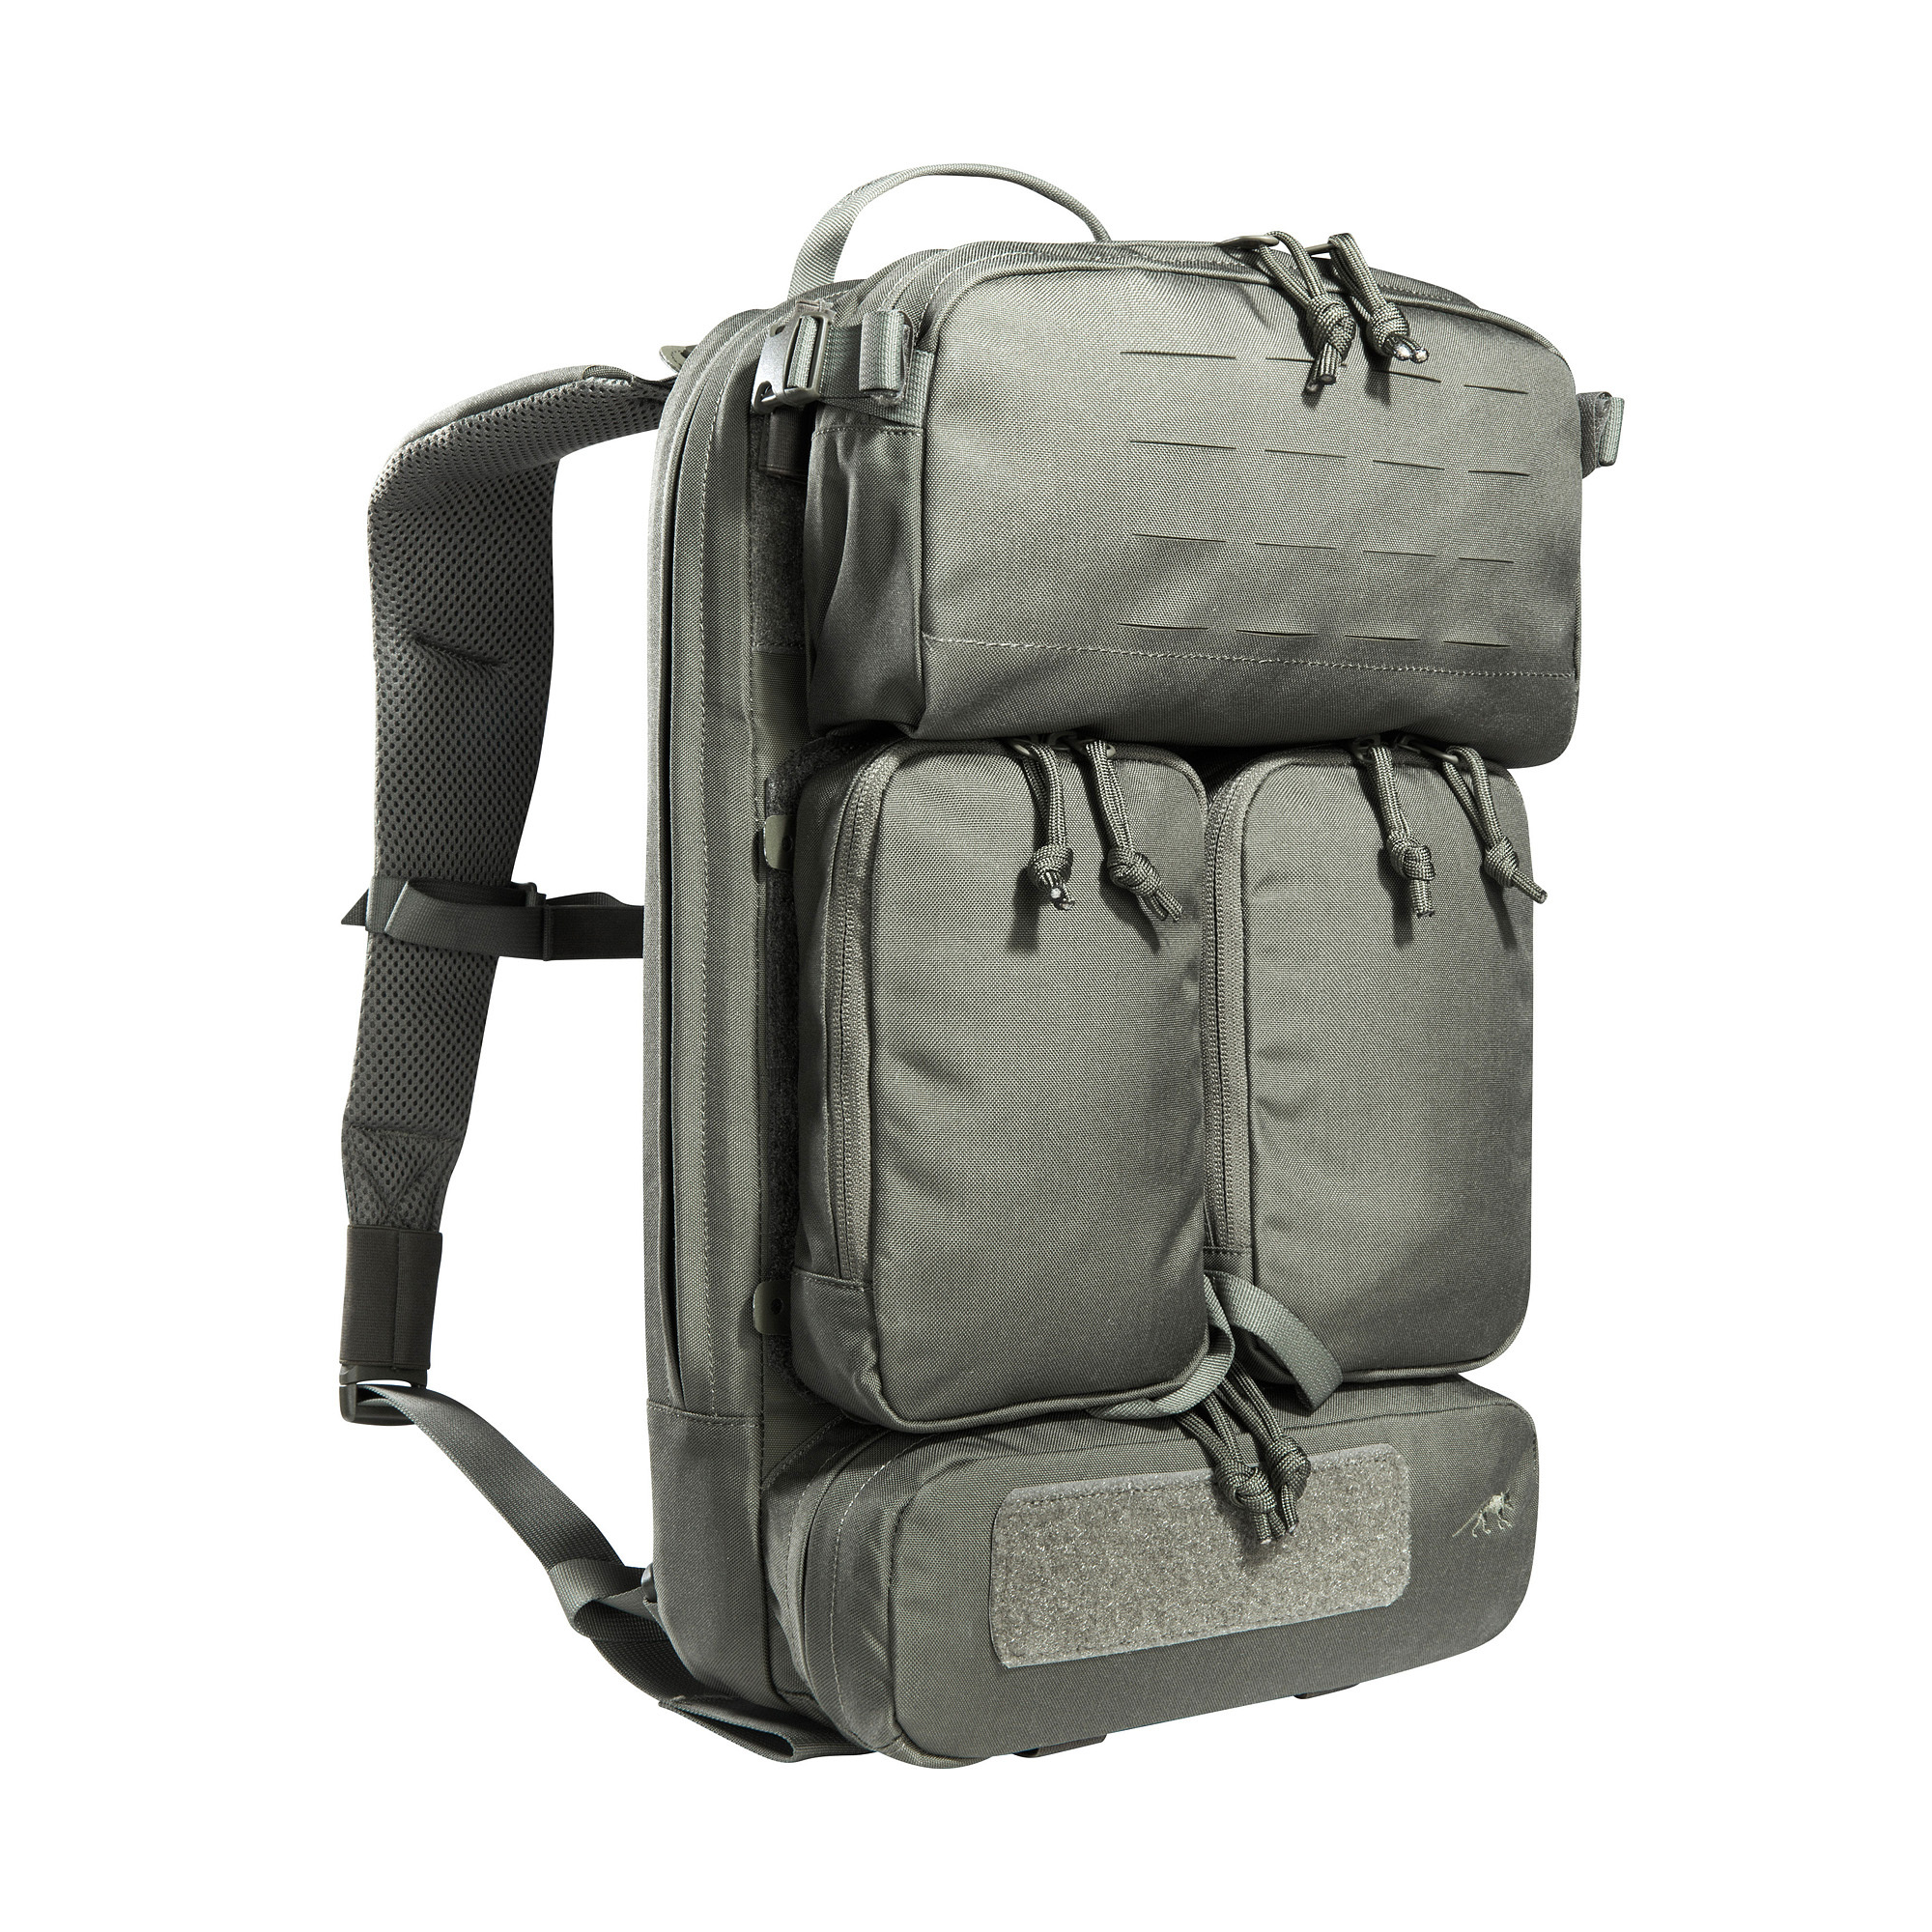 TT Modular Gunners Pack IRR - Modular backpack